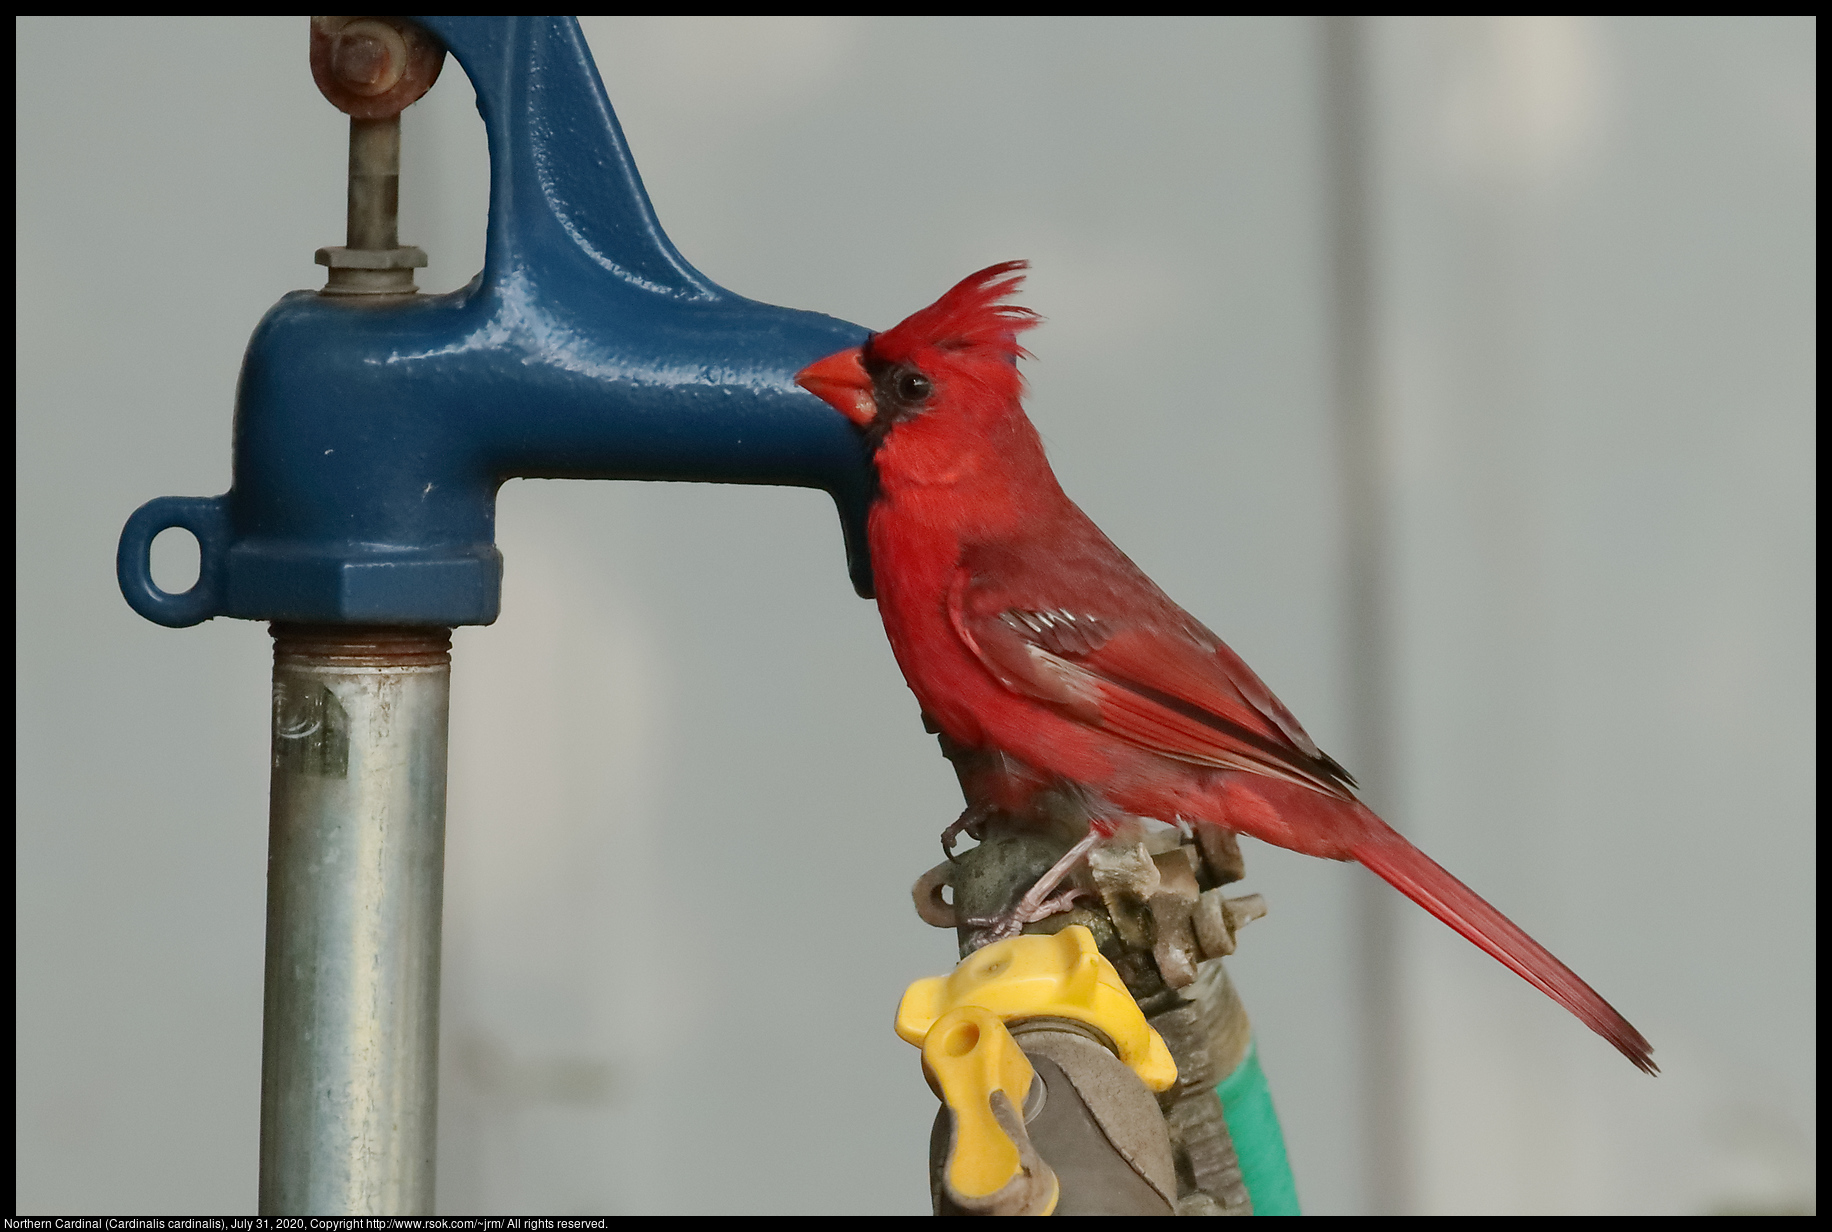 Northern Cardinal (Cardinalis cardinalis), July 31, 2020